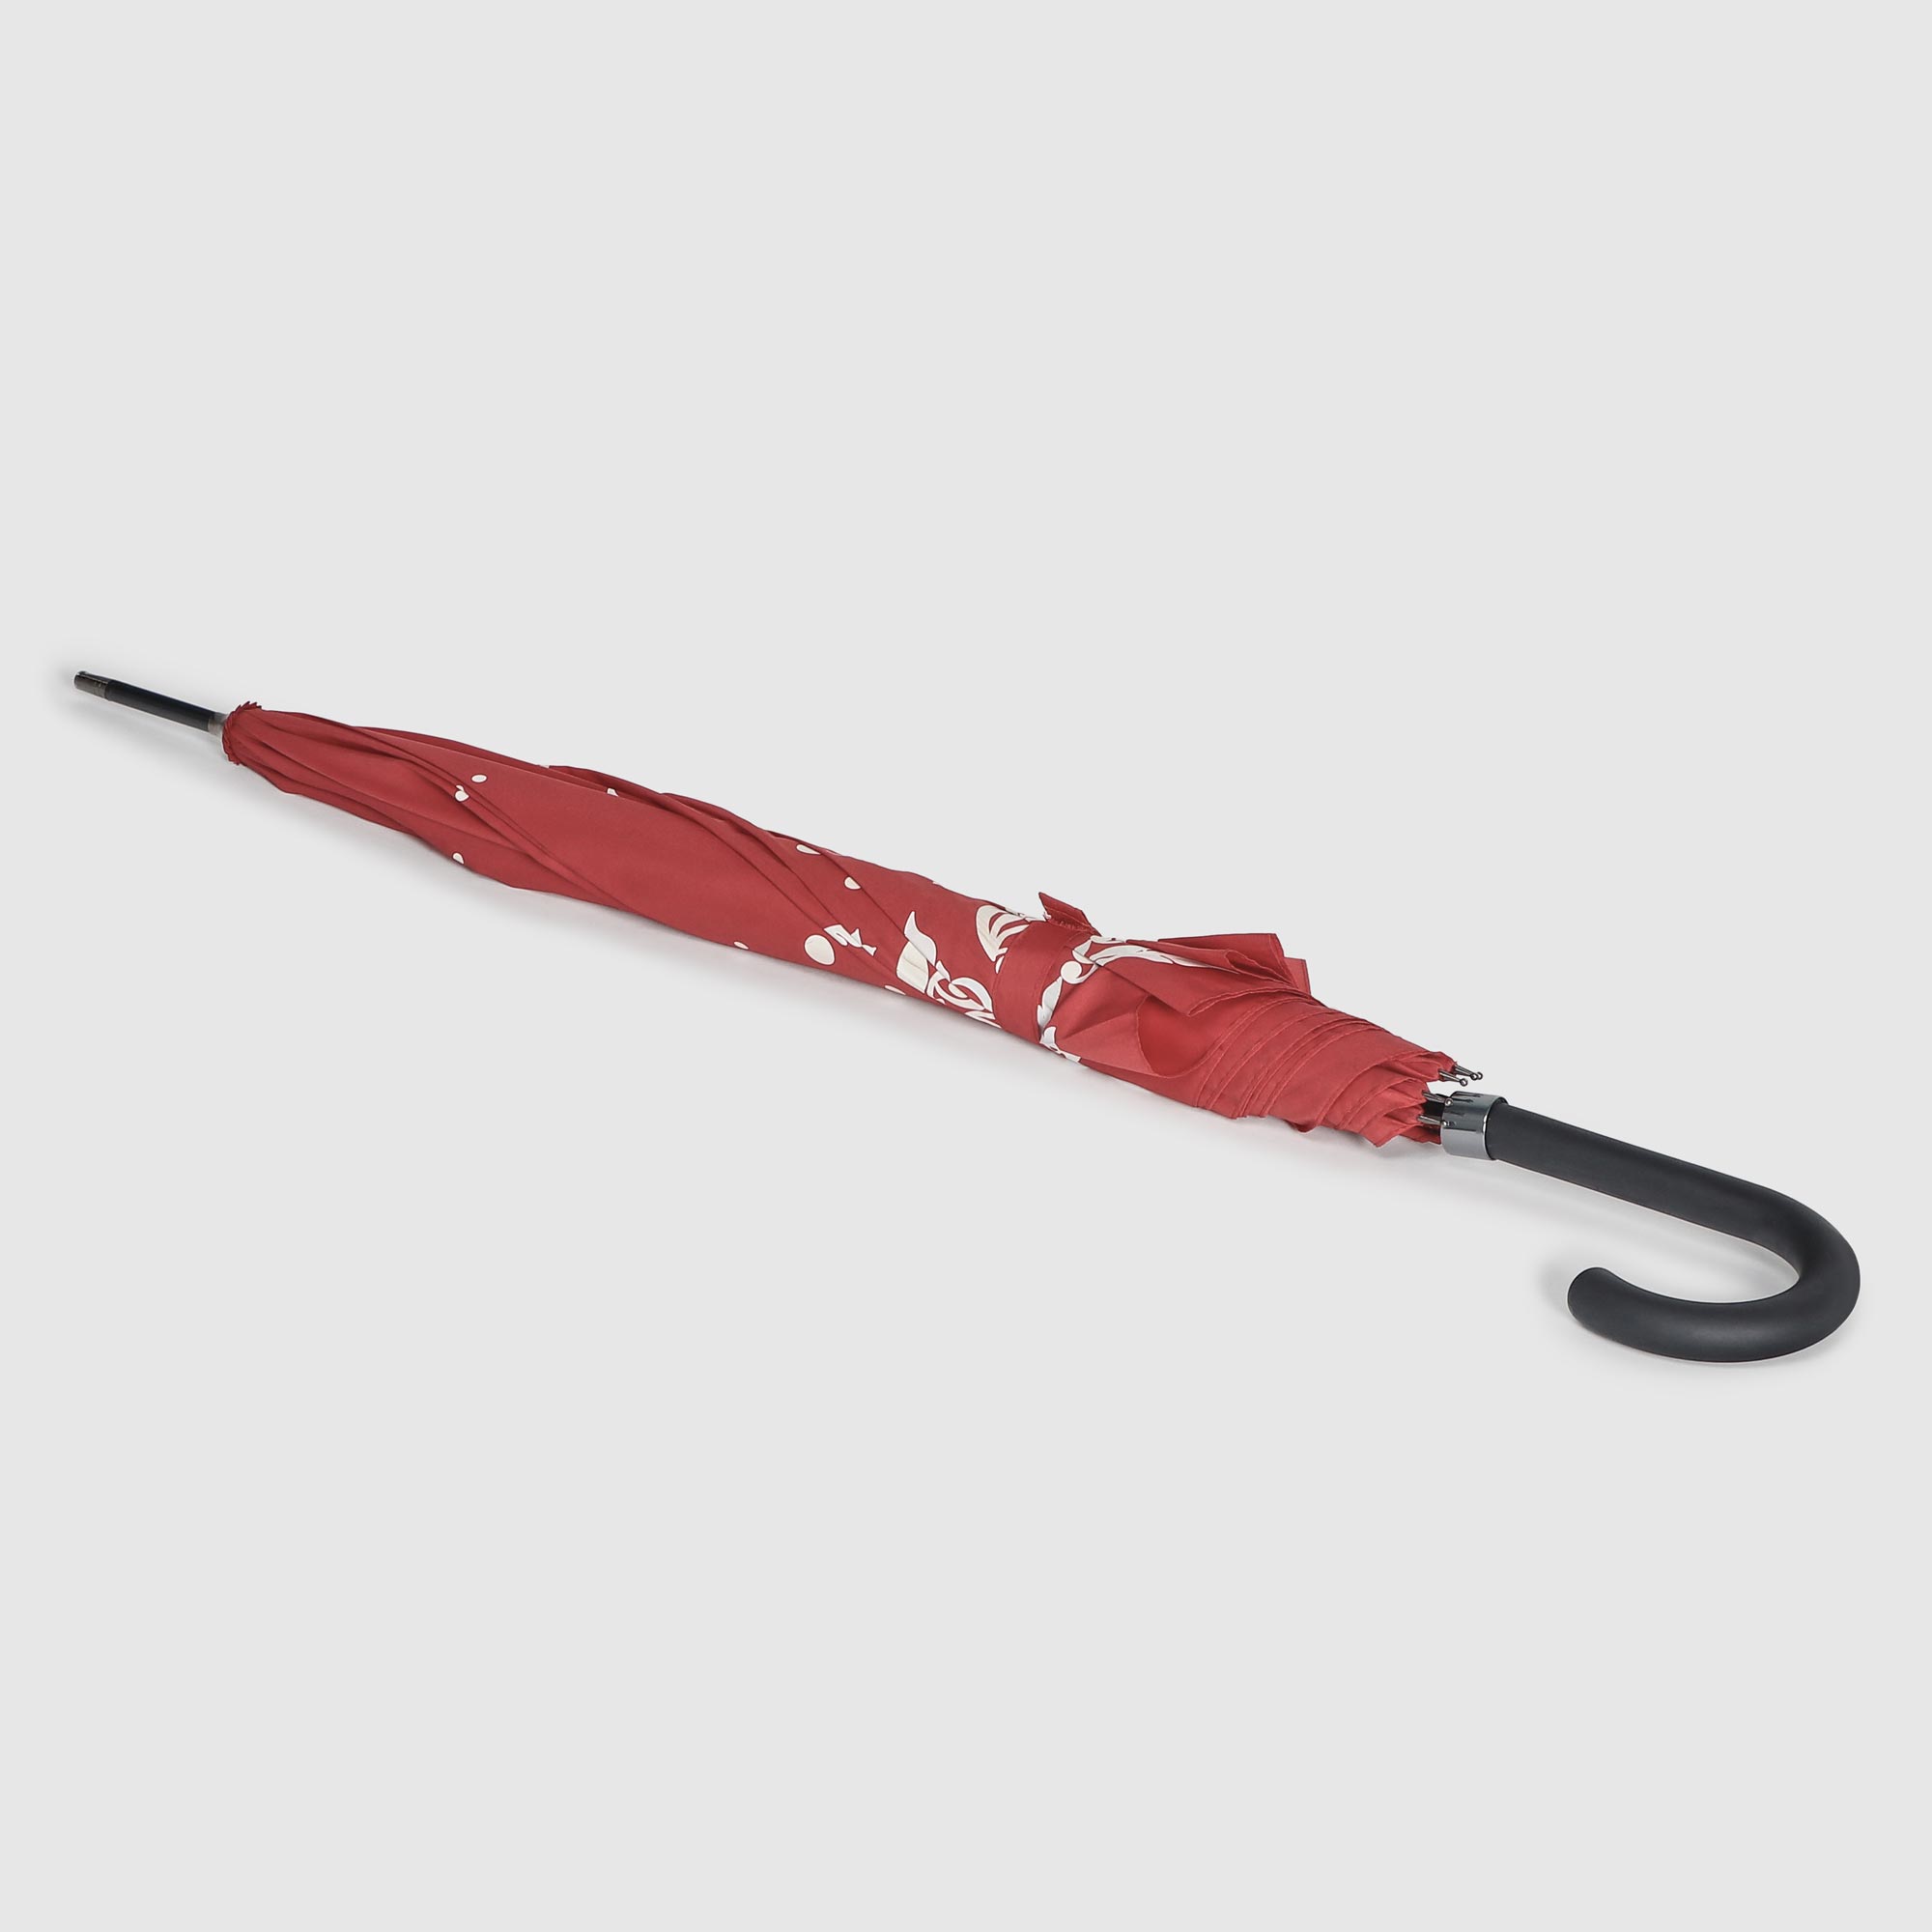 фото Зонт-трость susino полуавтоматический красный 58 см